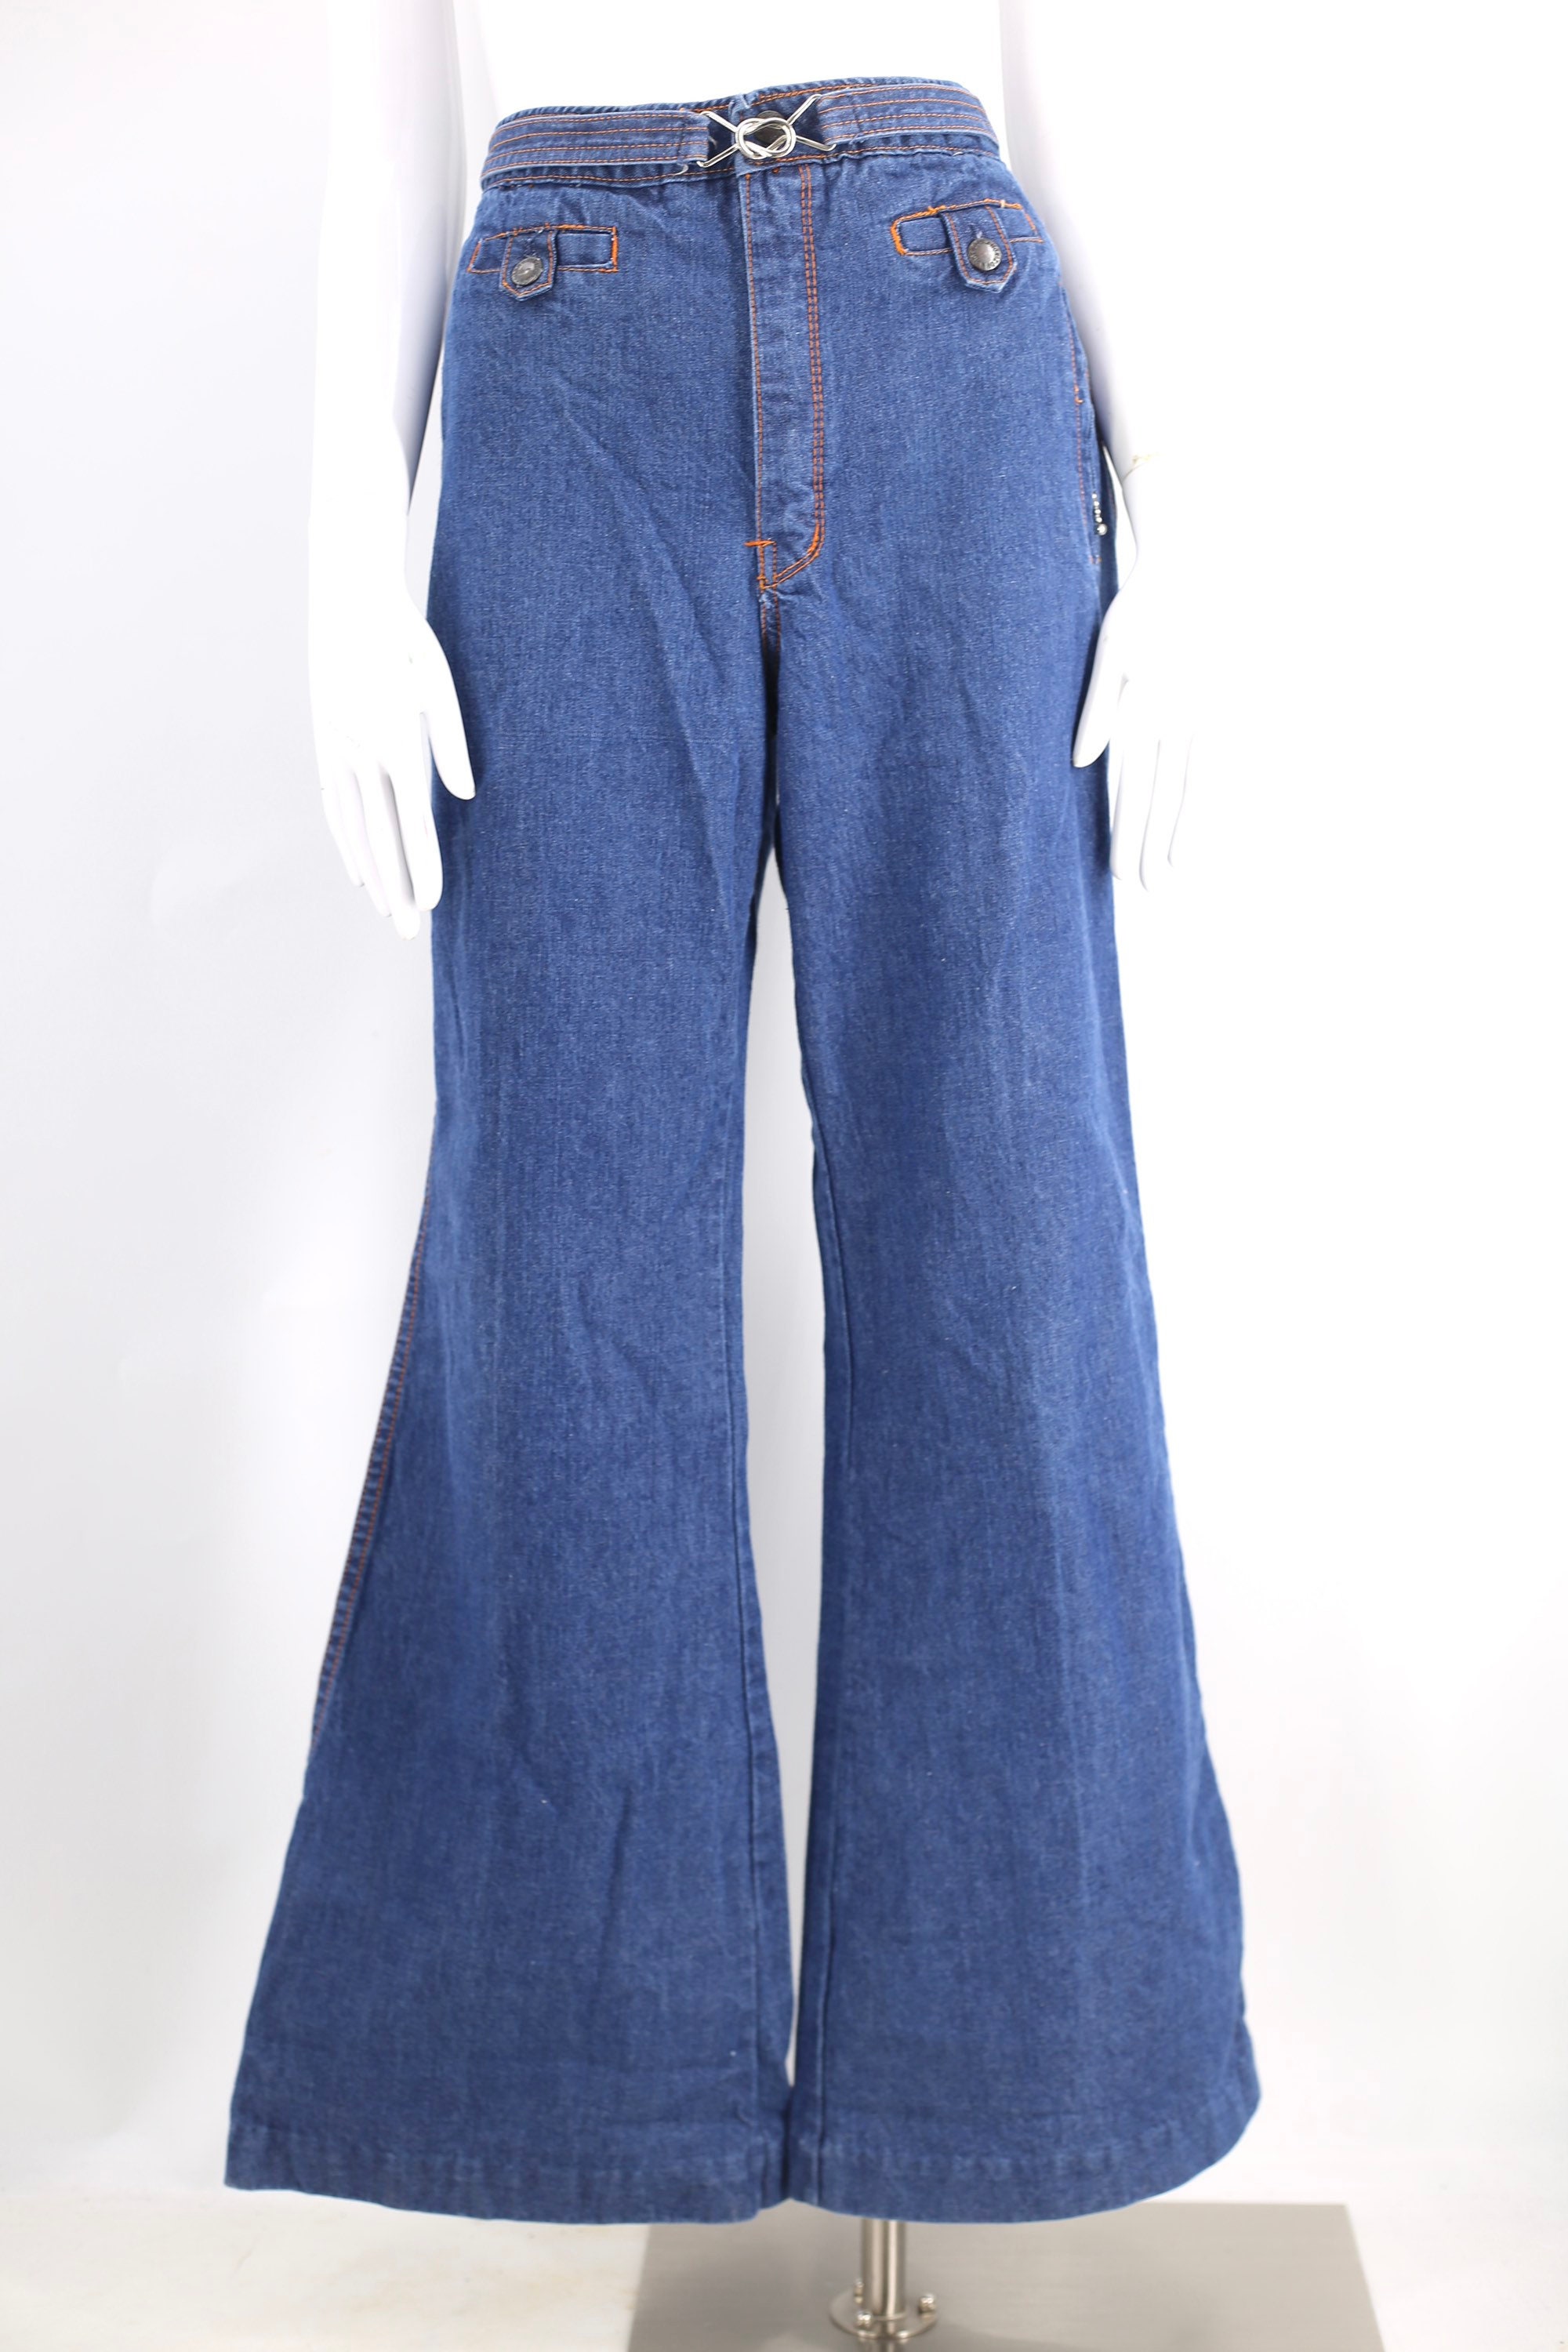 Kurv Stikke ud Initiativ 70s HORIZON high waisted denim bell bottoms jeans 36 / vintage 1970s buckle  flares pants sz Large XL